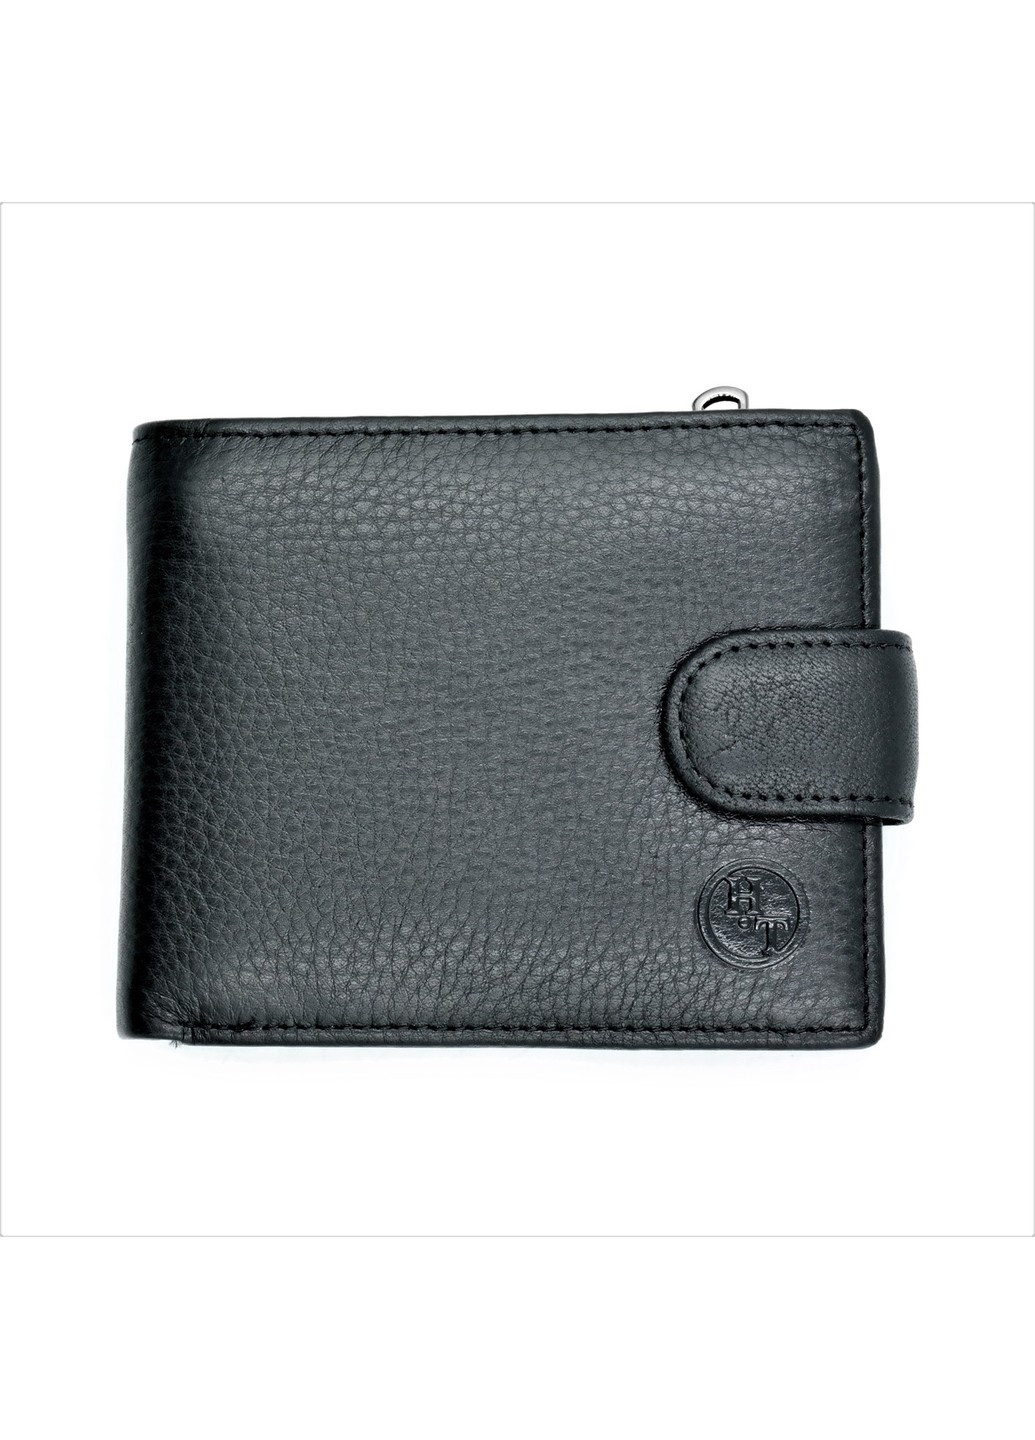 Мужской кожаный кошелек 11,5 х 9,5 х 3 см Черный wtro-nw-208-0613-07 Weatro (272950021)